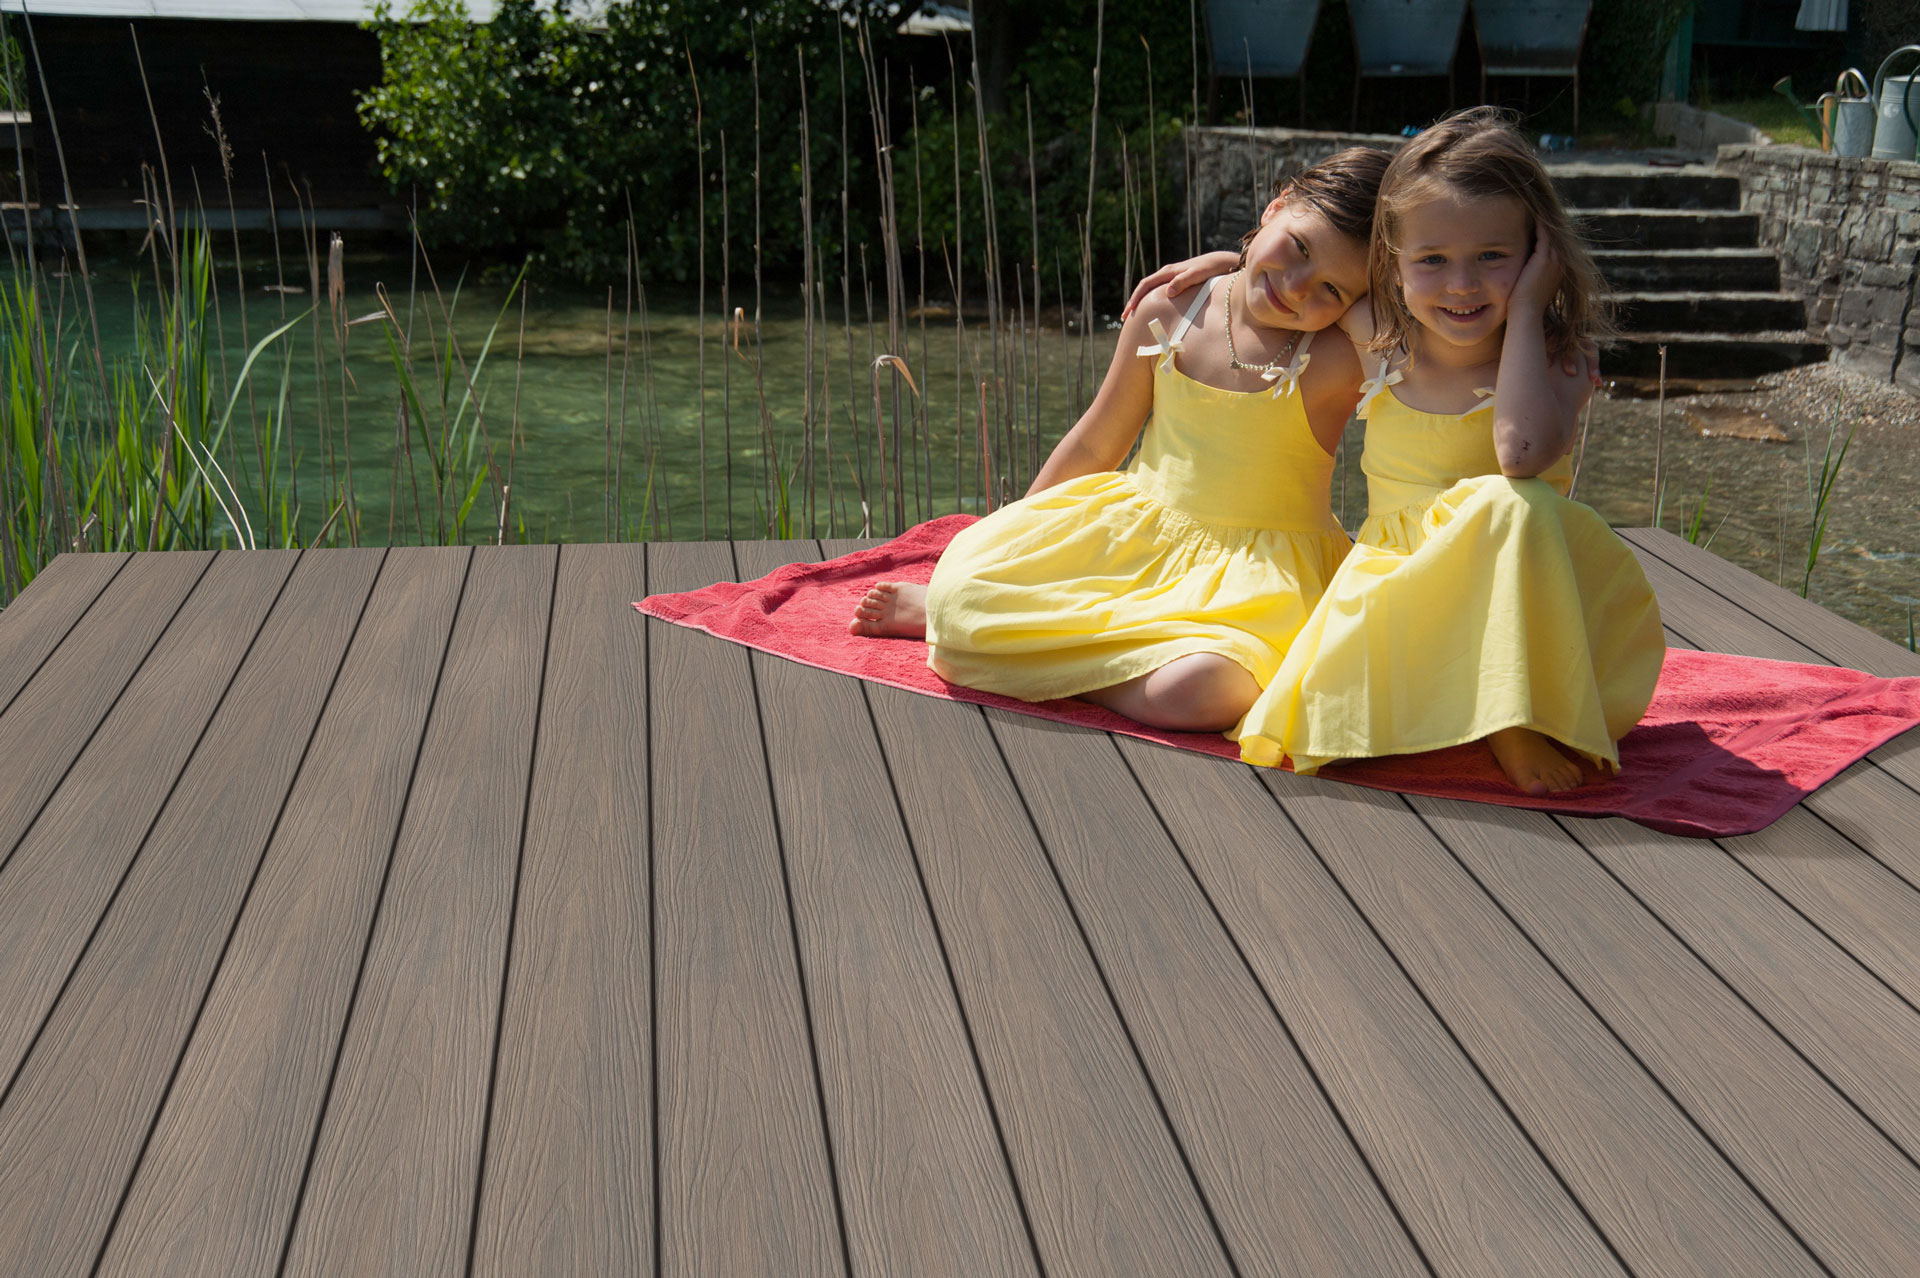 Fano Ultrashield Antik | 2 Mädchen sitzen auf braunen WPC Outdoorboden bei Teichsteg | Svoboda